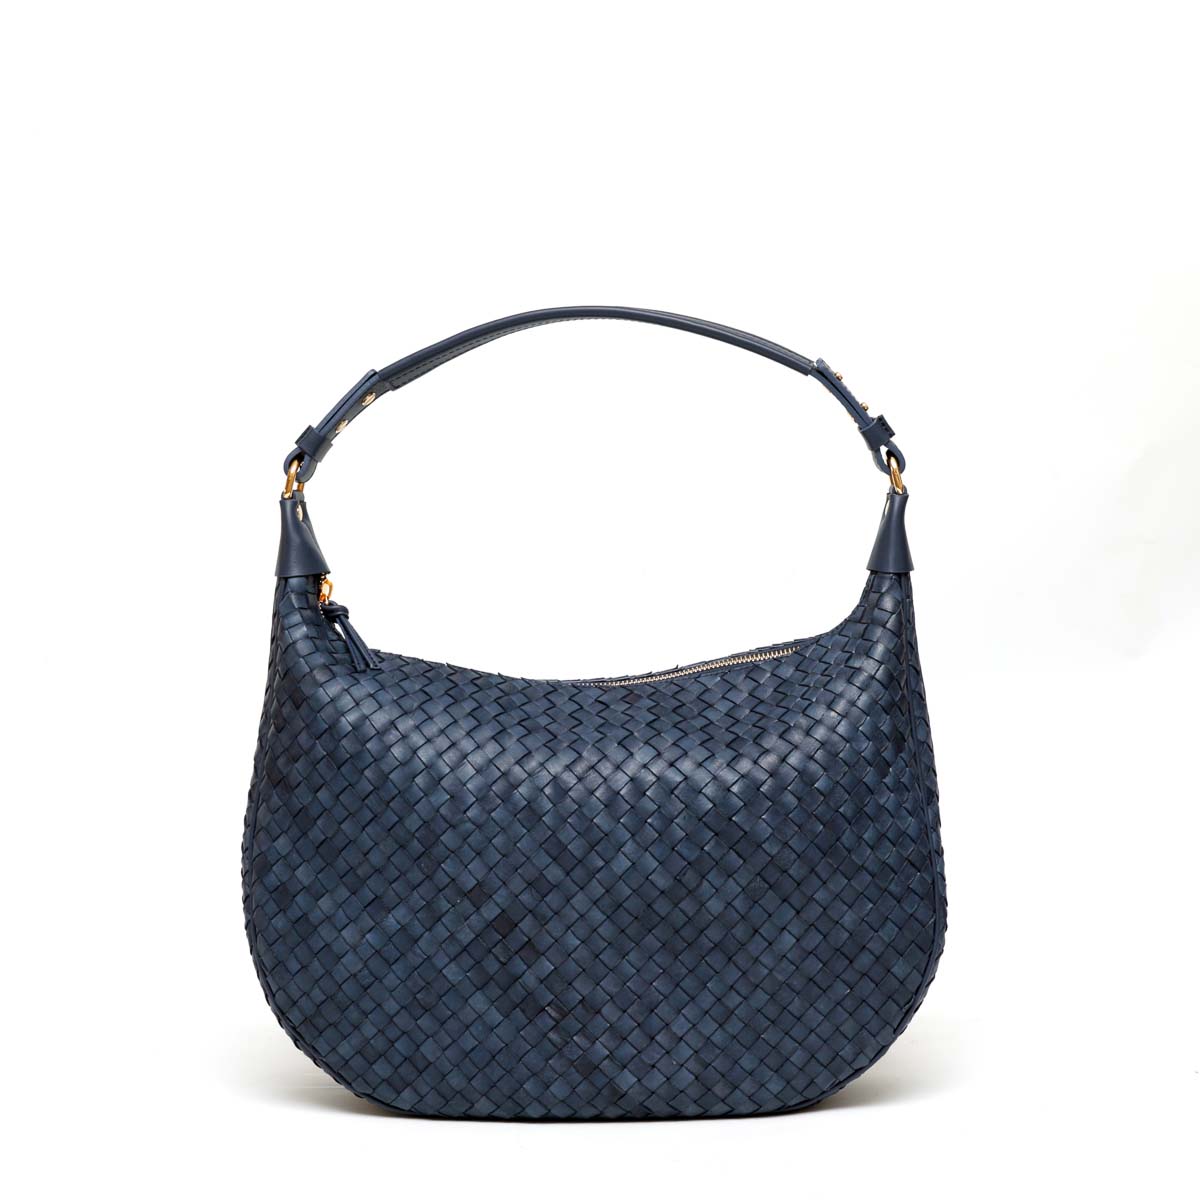 Alba, borsa da donna a spalla in pelle intrecciata blu, prodotta da Pianigiani.